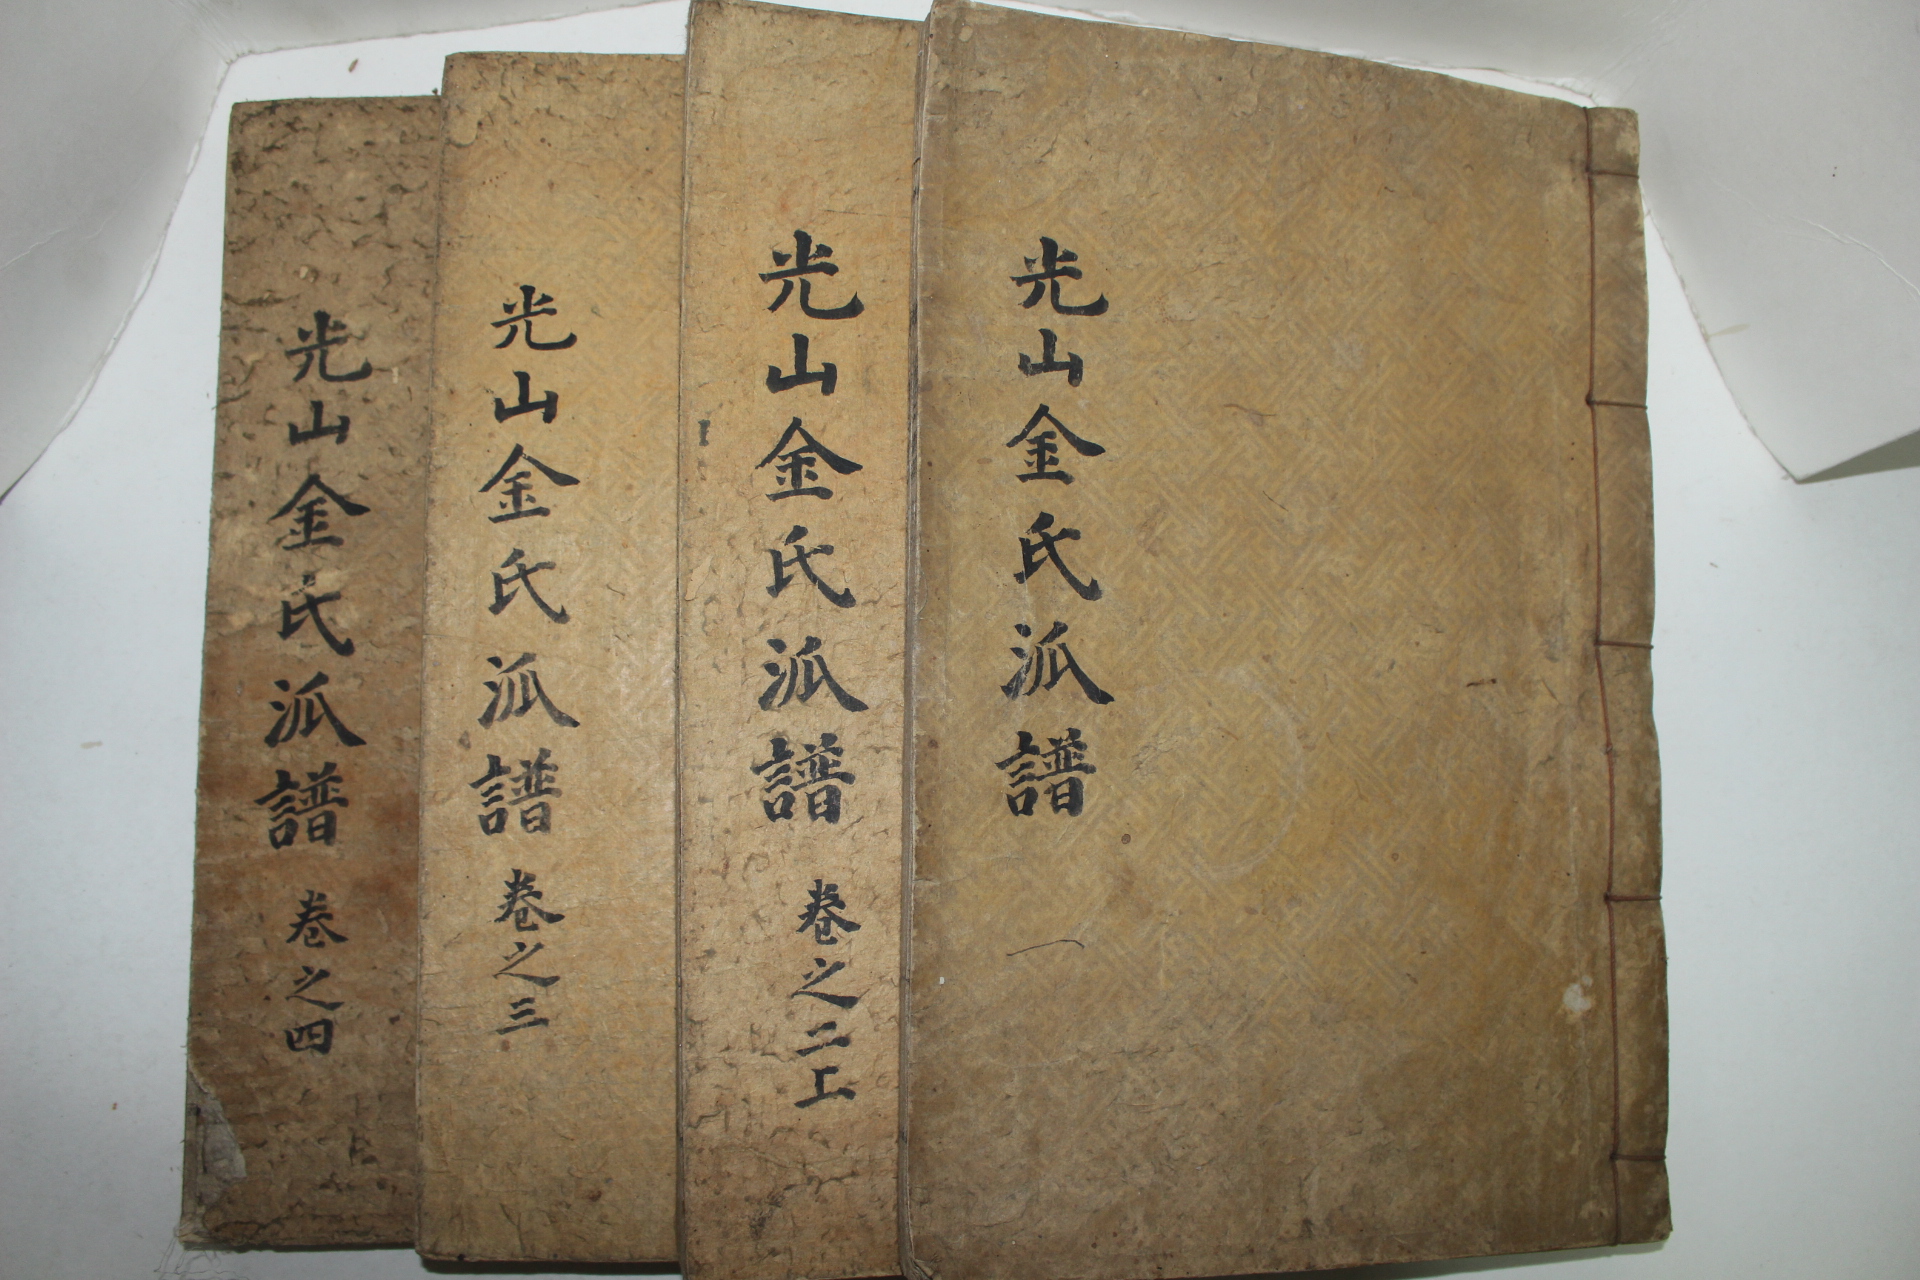 1927년 광산김씨파보(光山金氏派譜) 4책완질